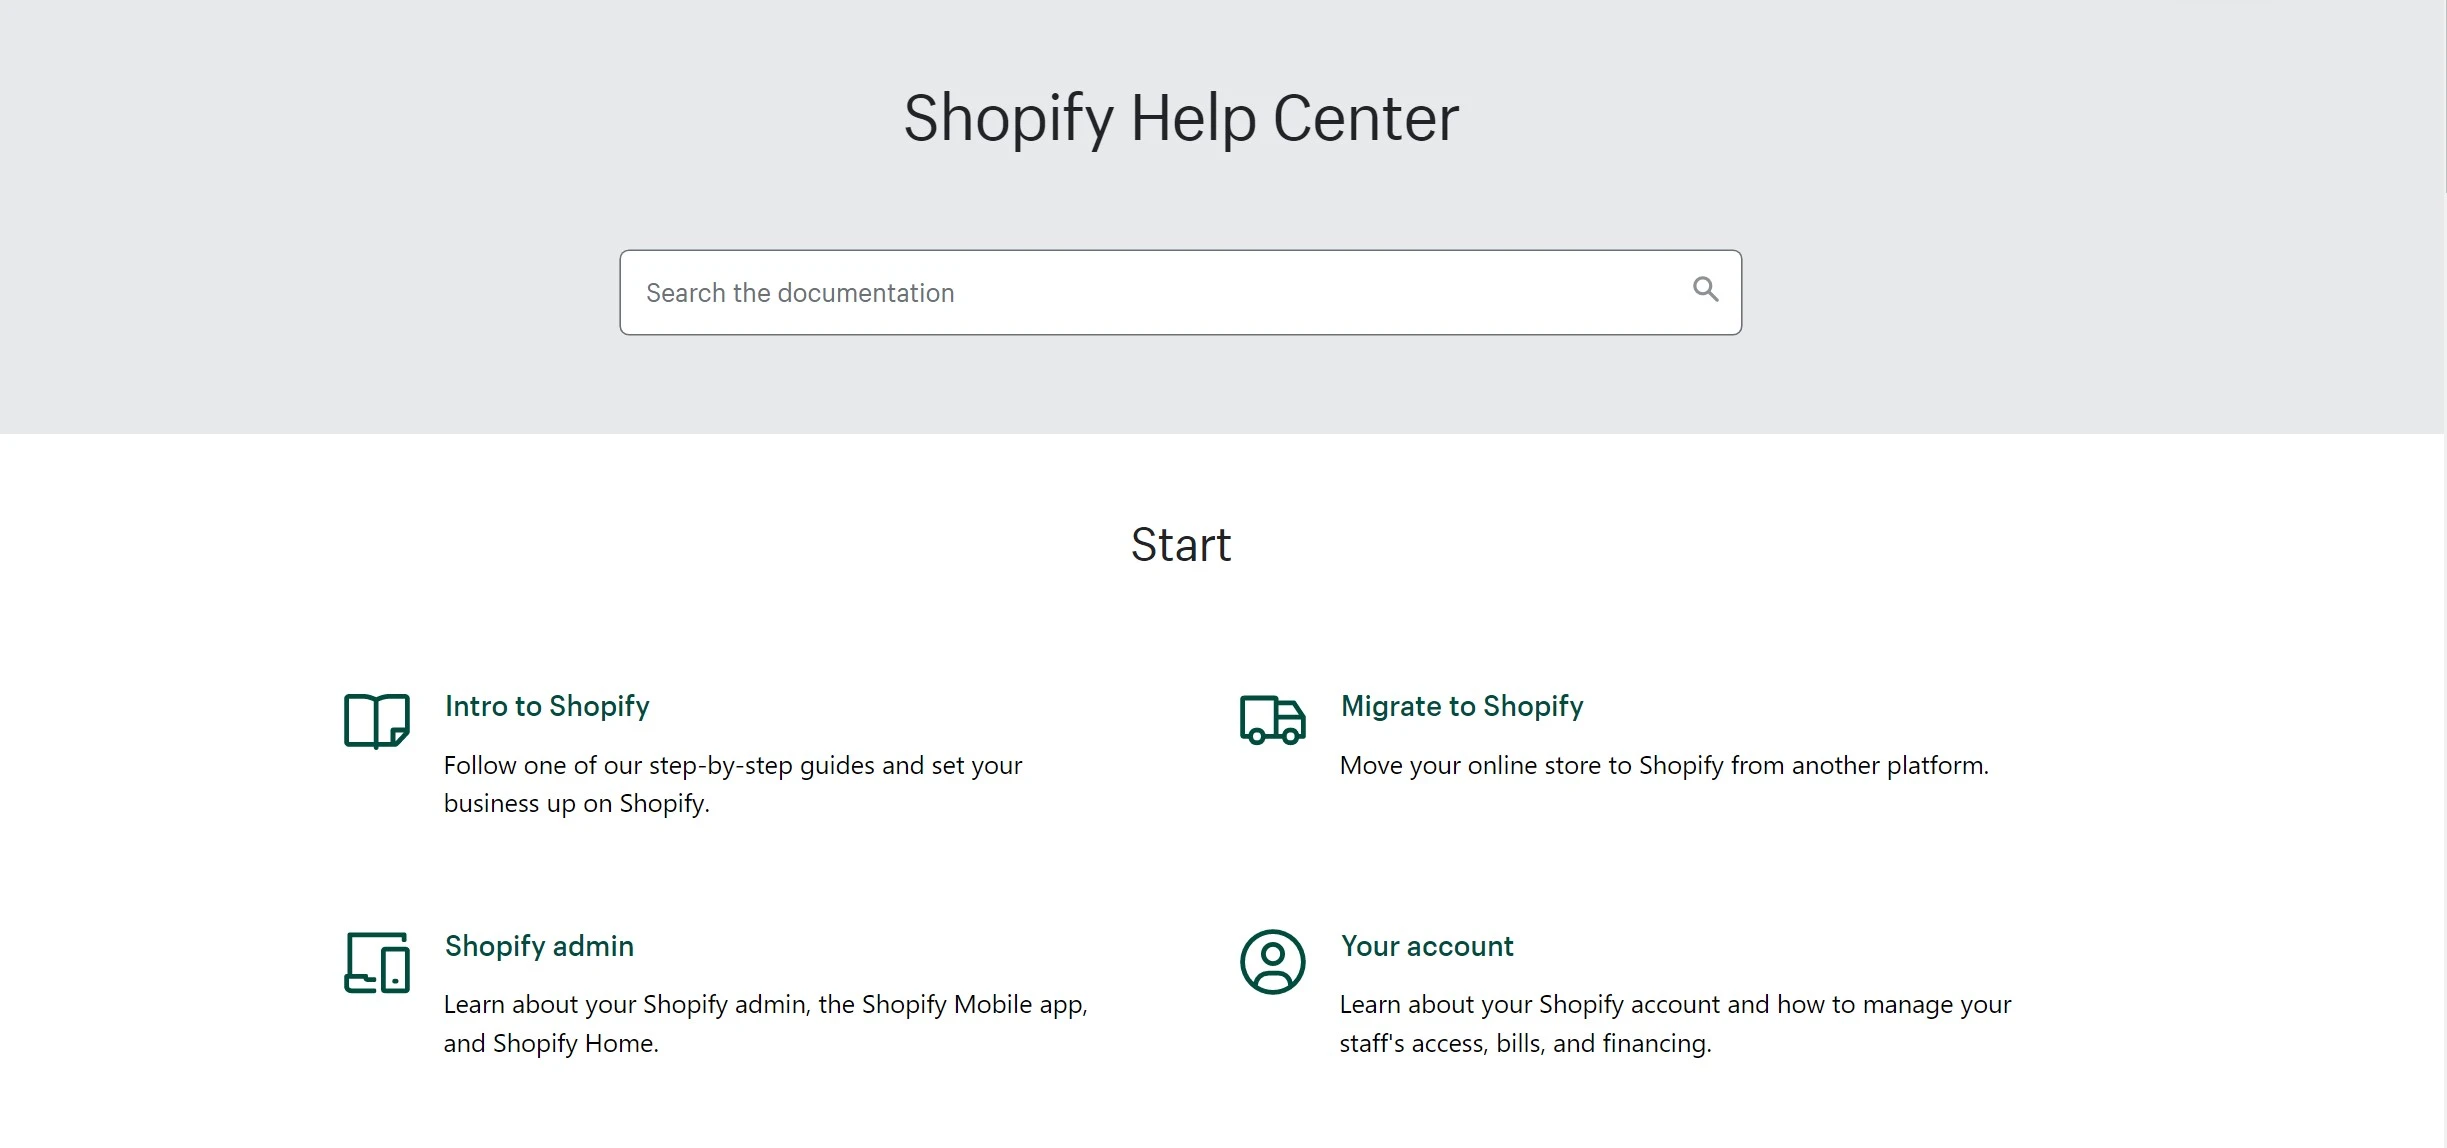 Pusat Bantuan Shopify